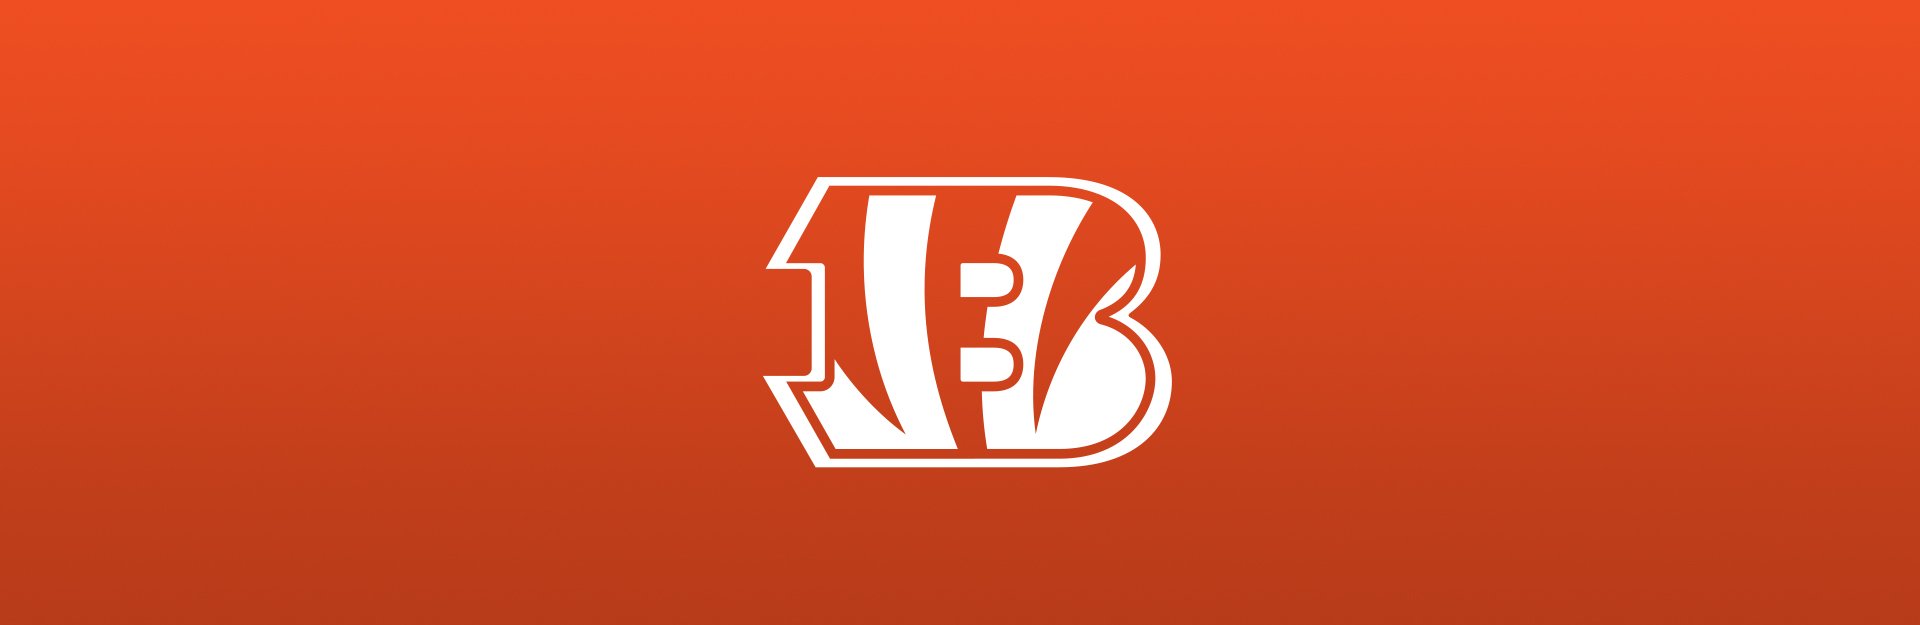 Bengals logo on orange background